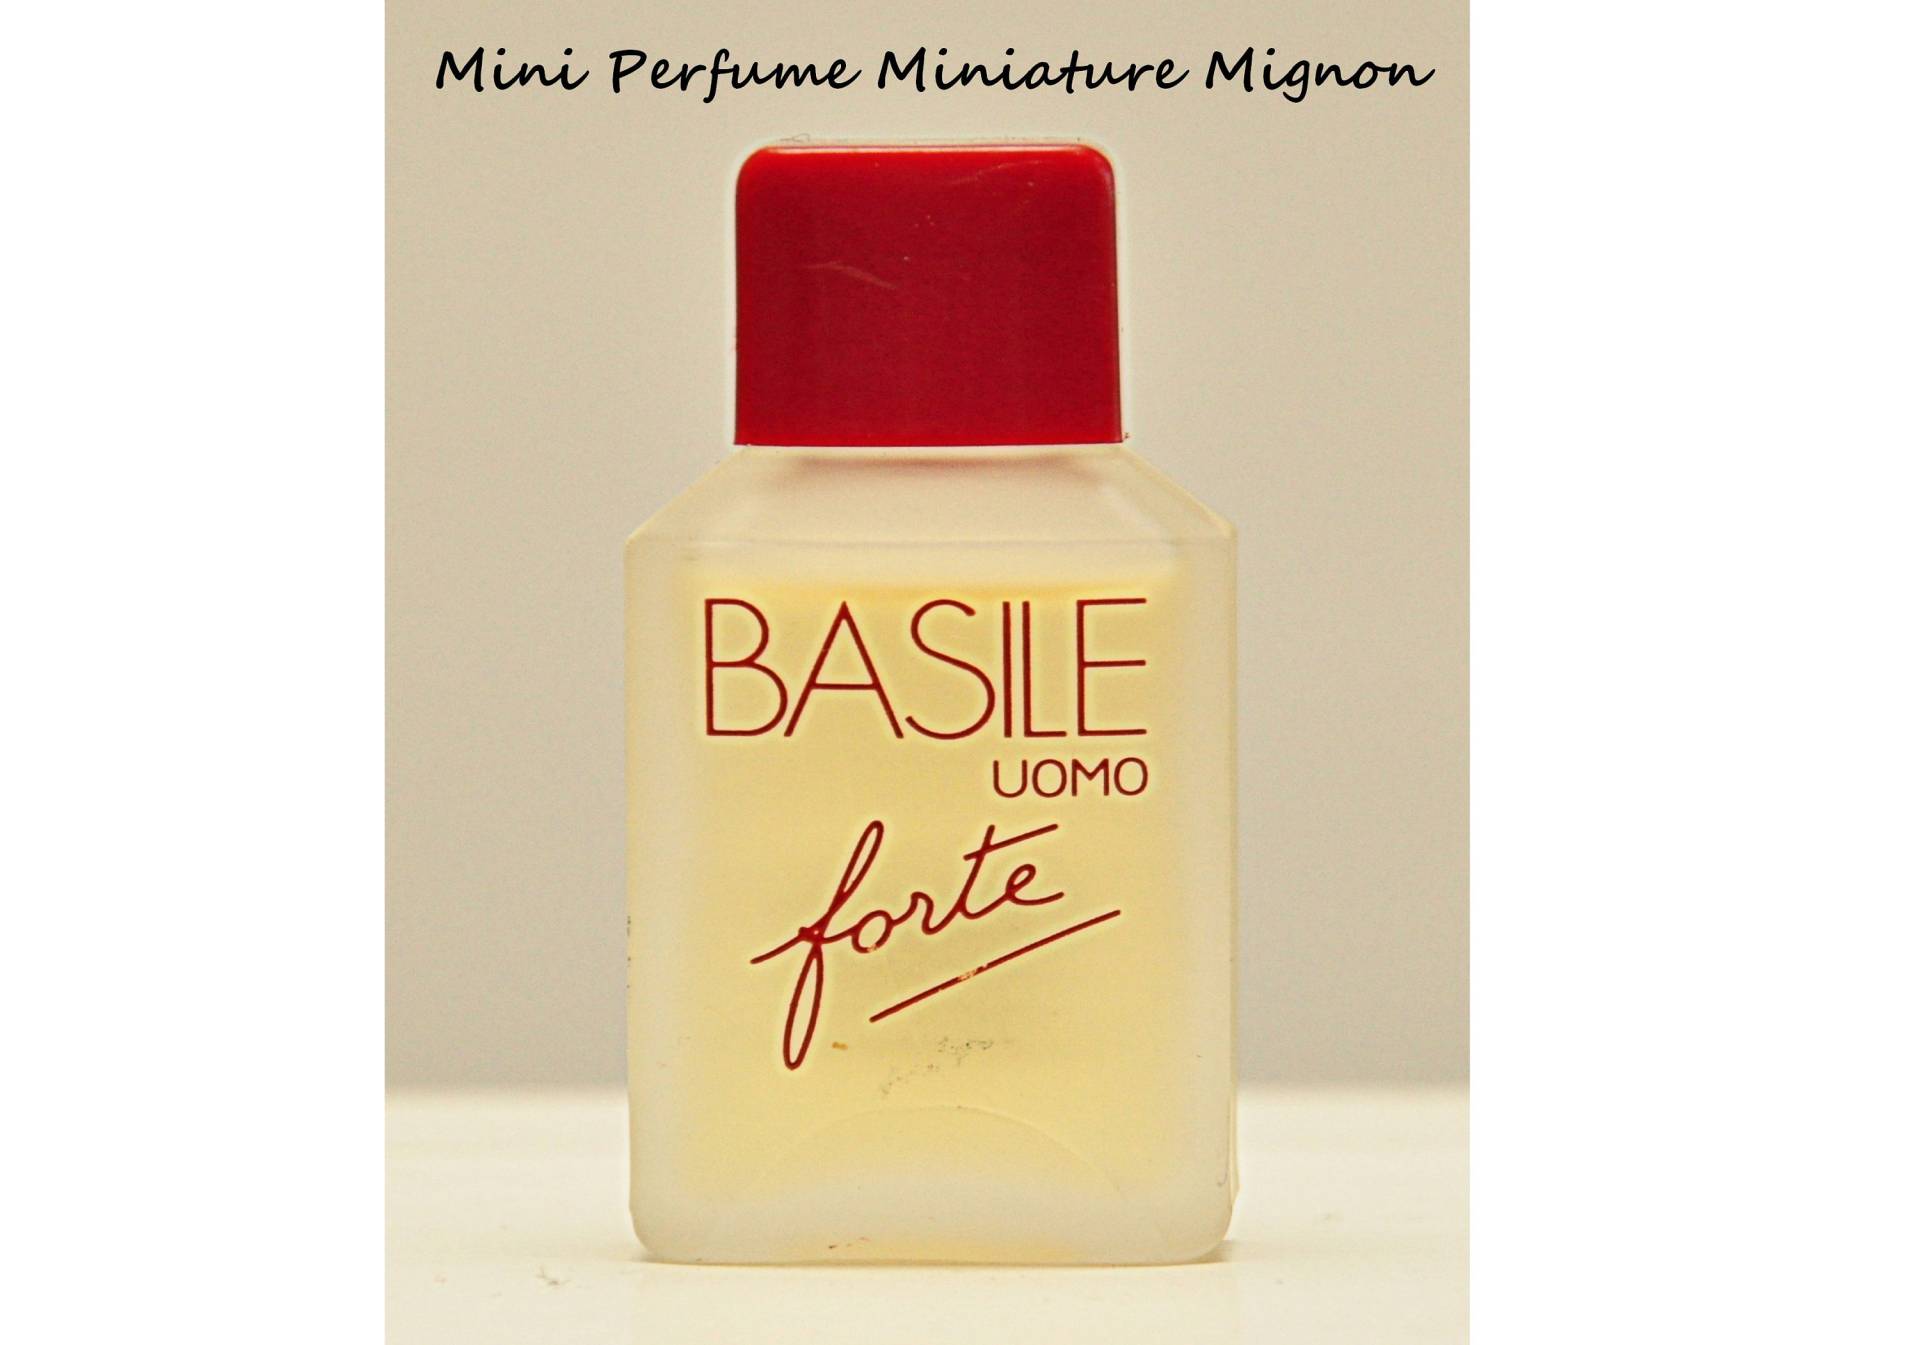 Basile Uomo Forte Von Eau De Toilette Edt 6 Ml Miniatur Splash Non Spray Herrenparfüm Seltener Jahrgang 1989 von YourVintagePerfume